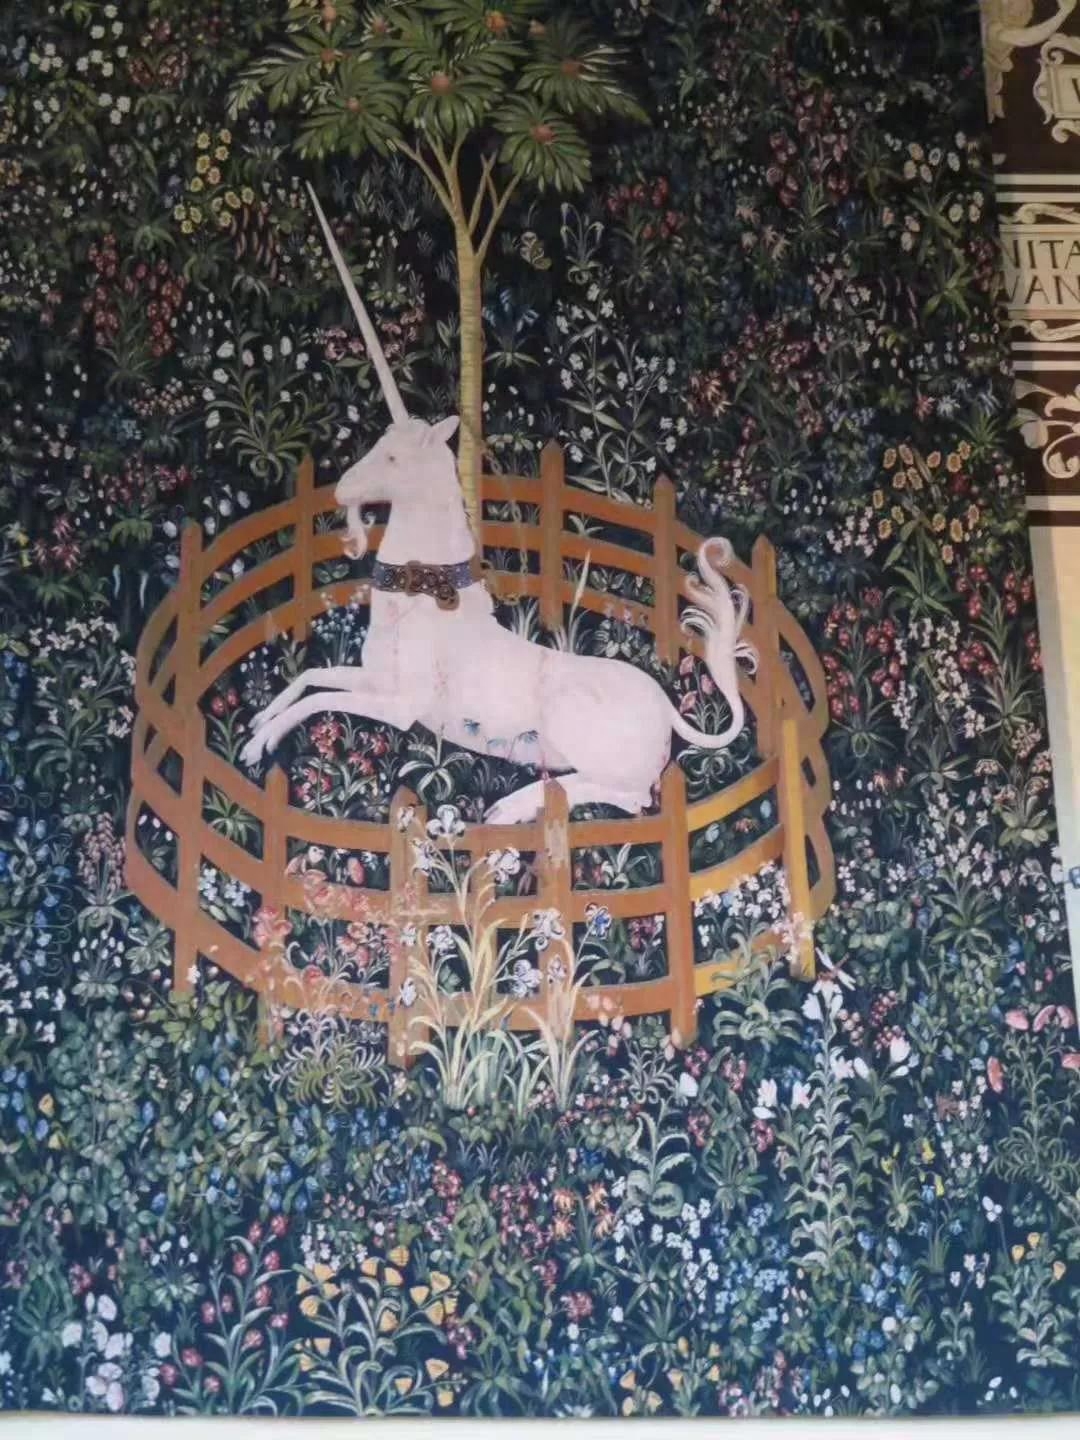 我最喜欢的是王后寝宫的独角兽挂毯。2018年冬天，我在巴黎中世纪博物馆第一次接触独角兽挂毯，欣喜莫名，我曾在“志雄走读”系列的《大巴黎》中做过详细介绍。根据官方手册记录